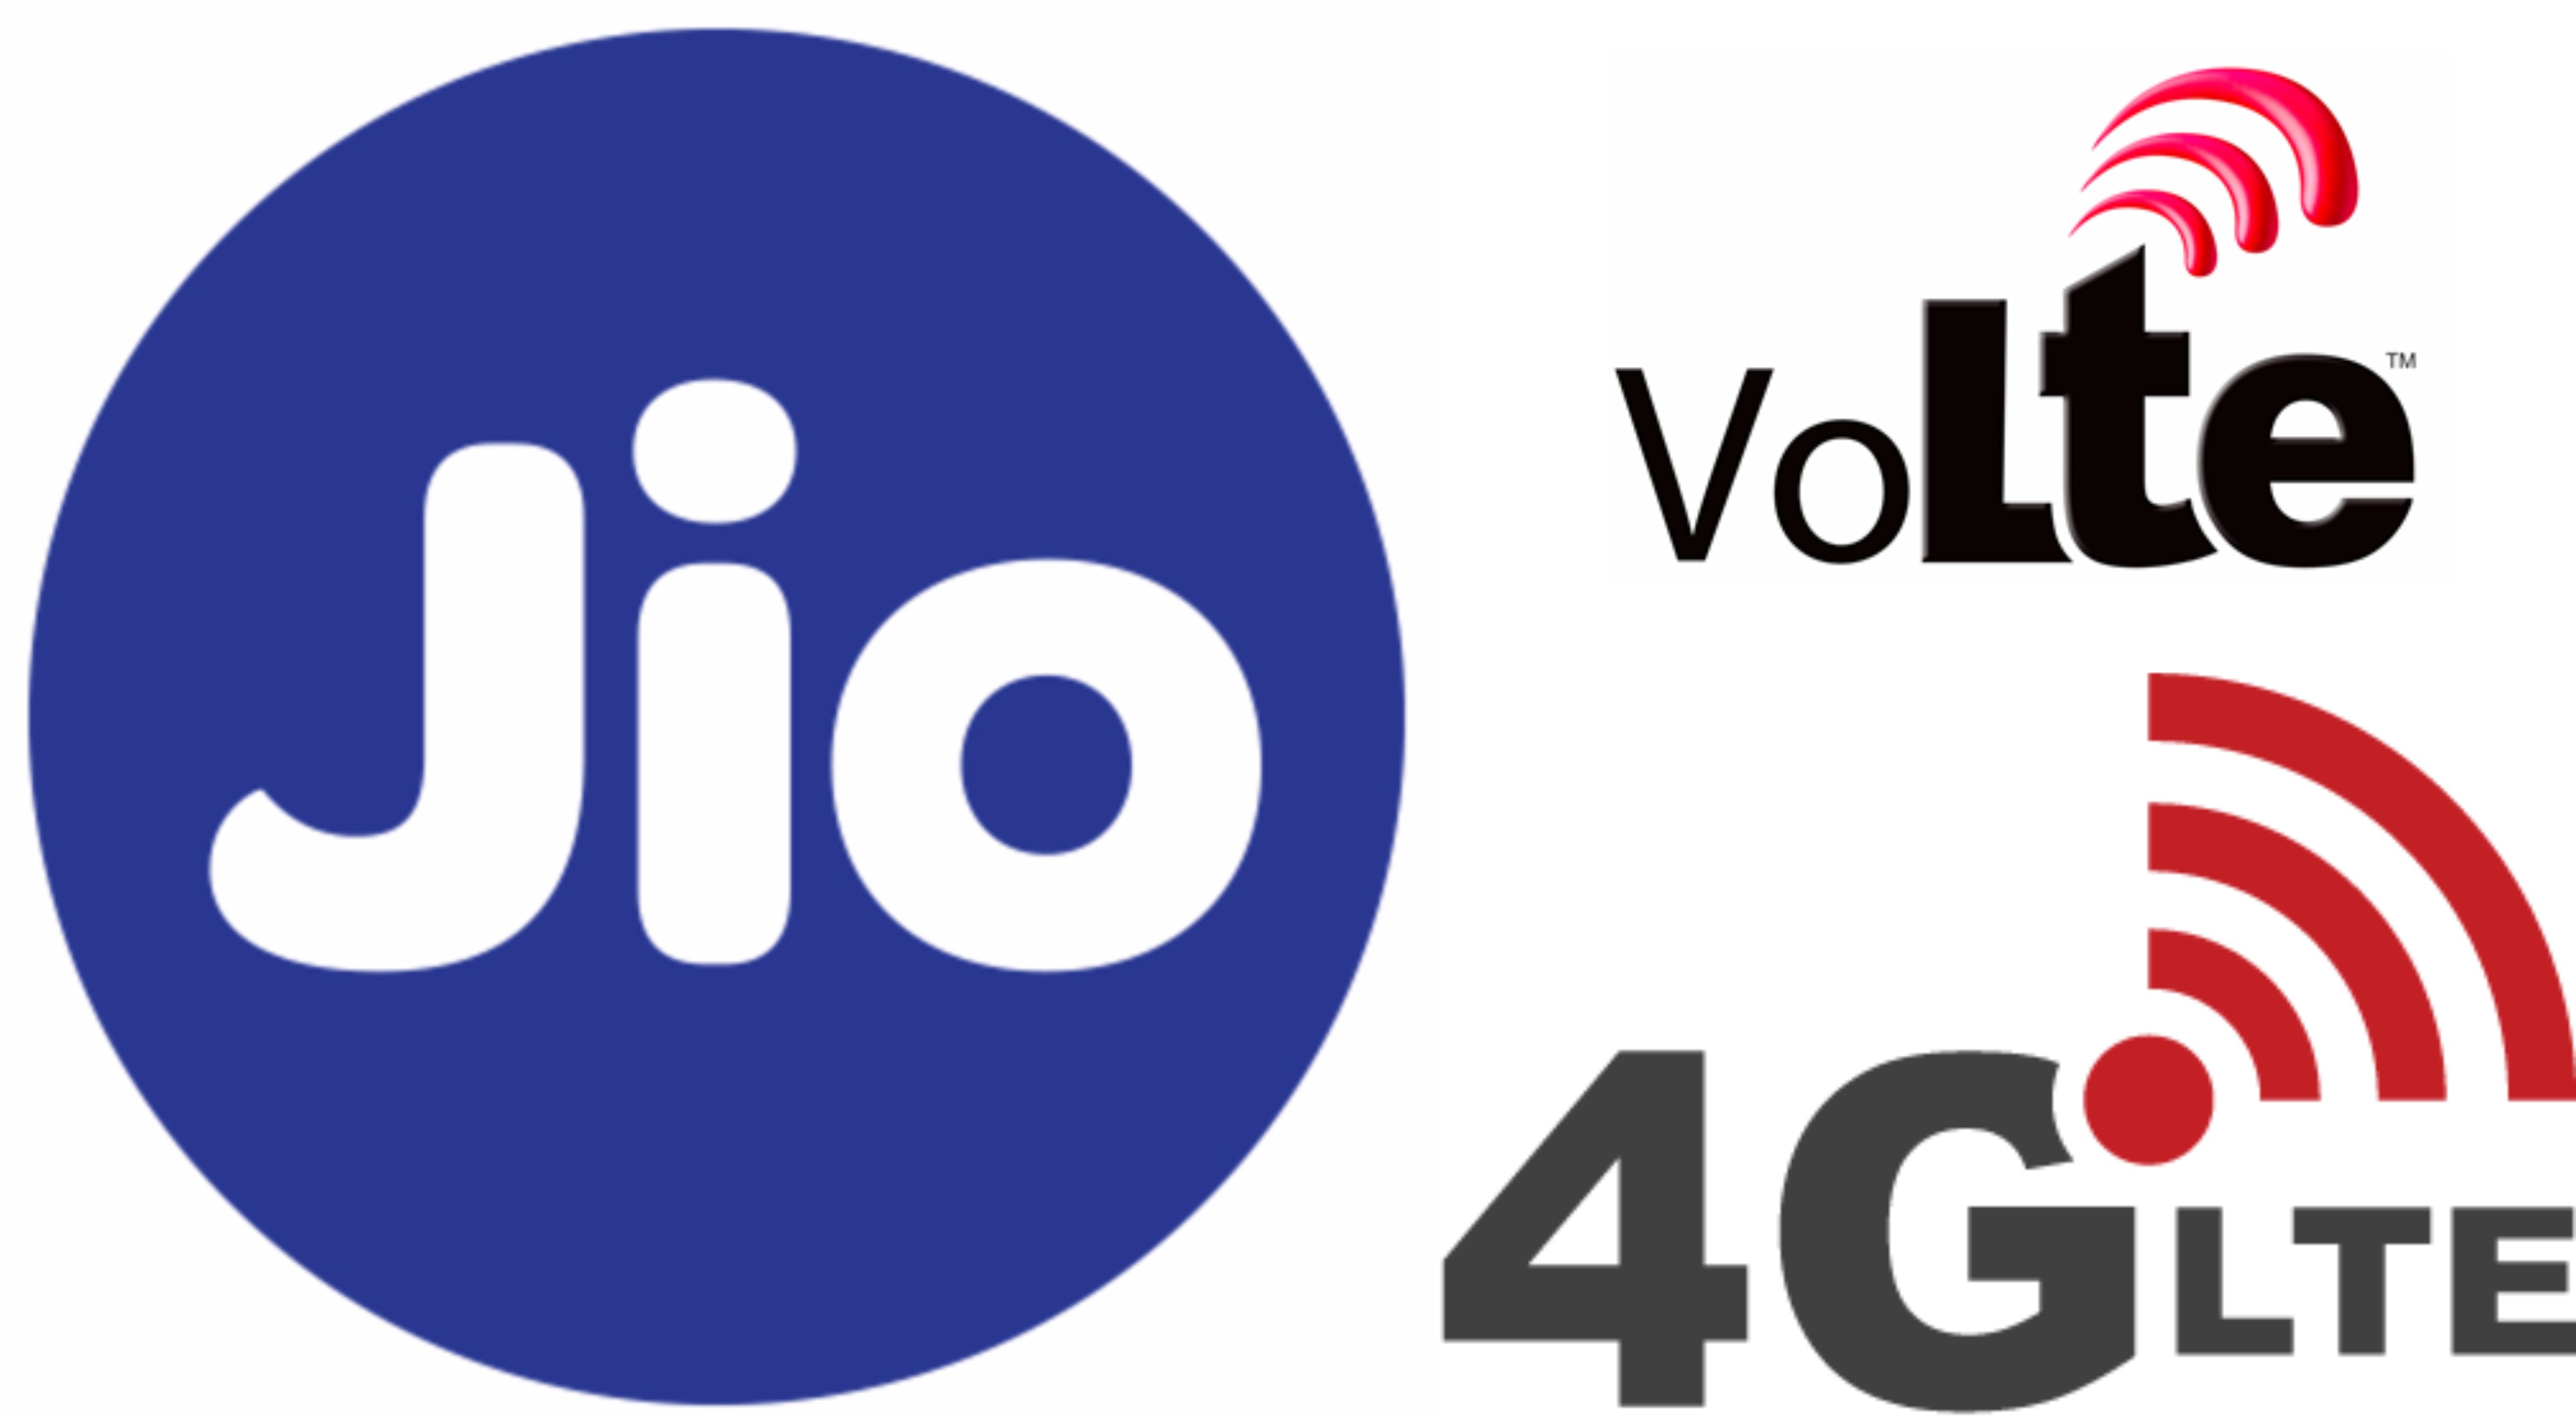 4G LTE vagy VoLTE támogatást nyújtó okostelefonok listája a Reliance Jio számára [Frissítve]